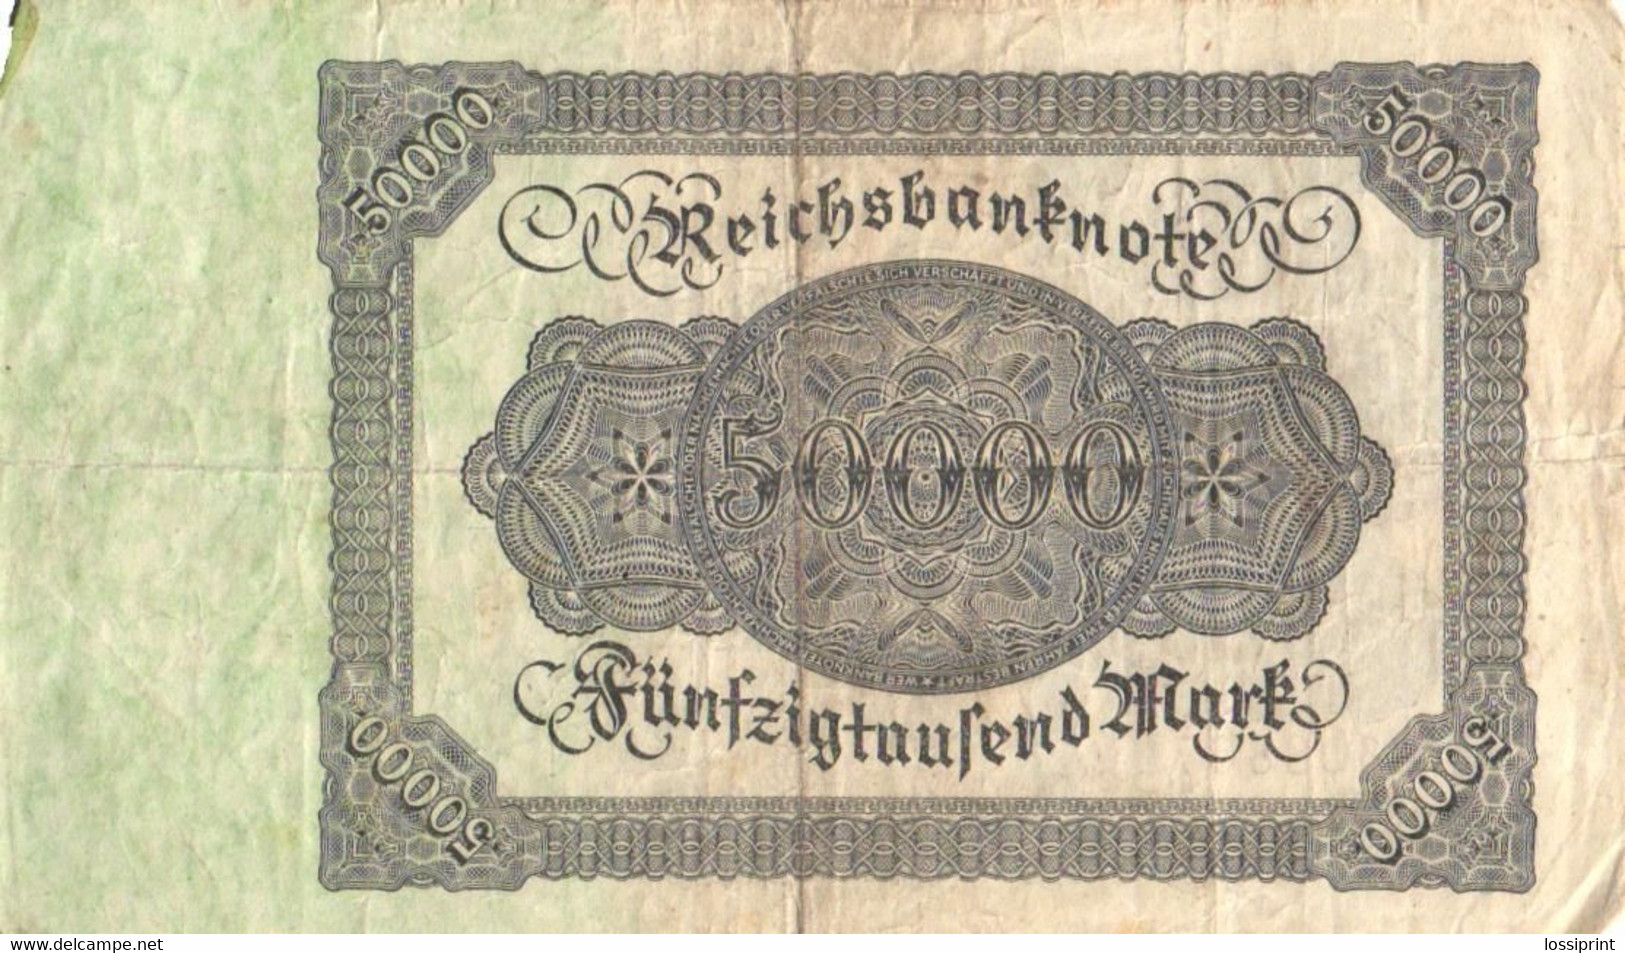 Germany:50000 Mark 1922 - 50000 Mark